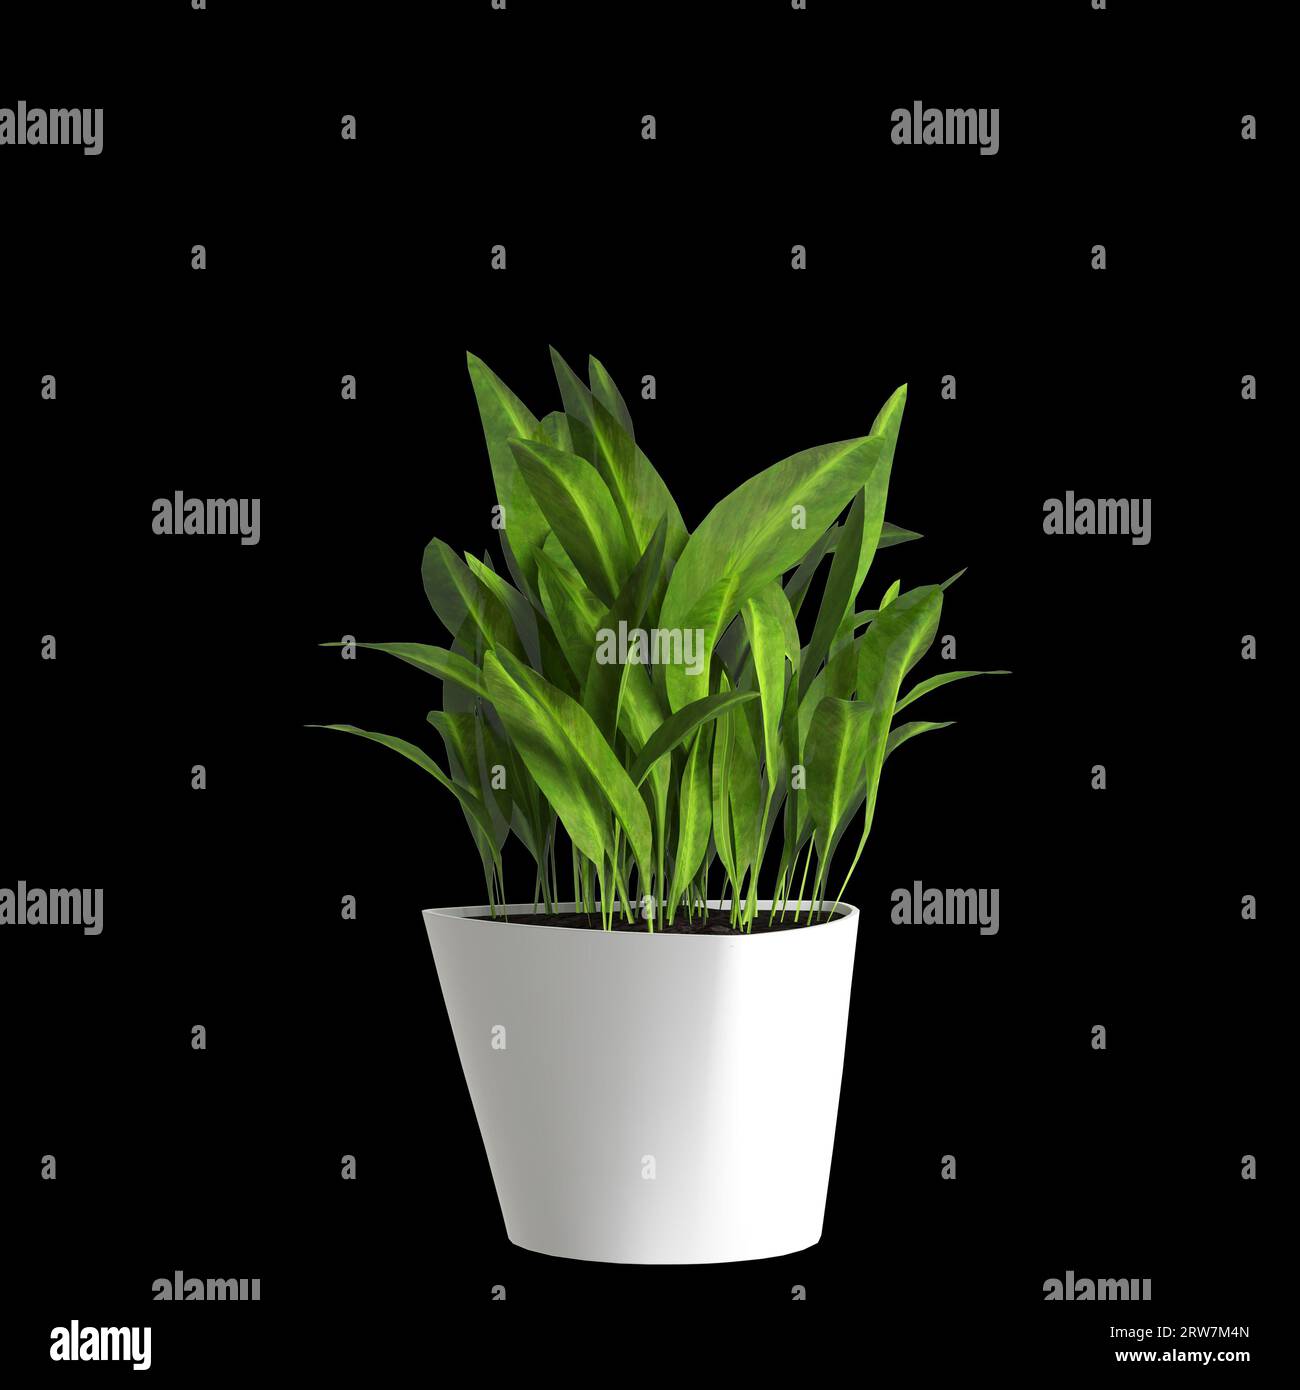 3d illustration of houseplant isolated on black background Stock Photo